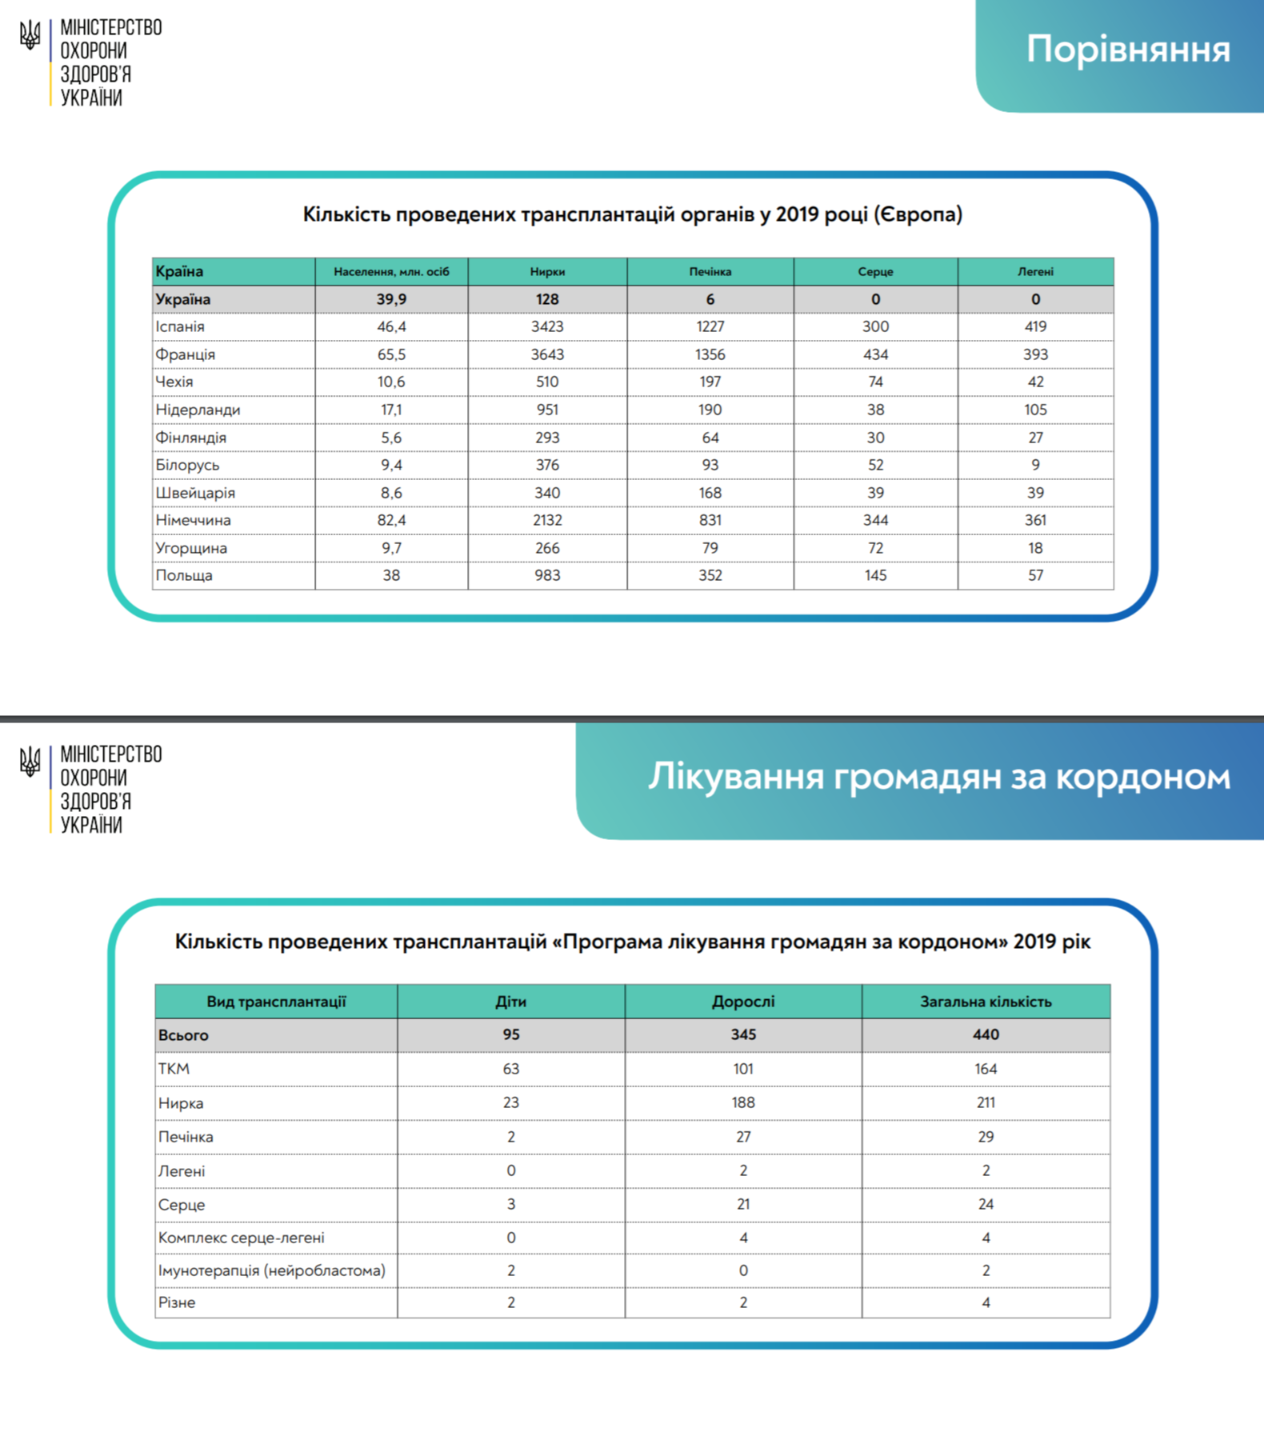 Стратегия Минздрава обретения Украиной трансплантационной независимости до 2023 года